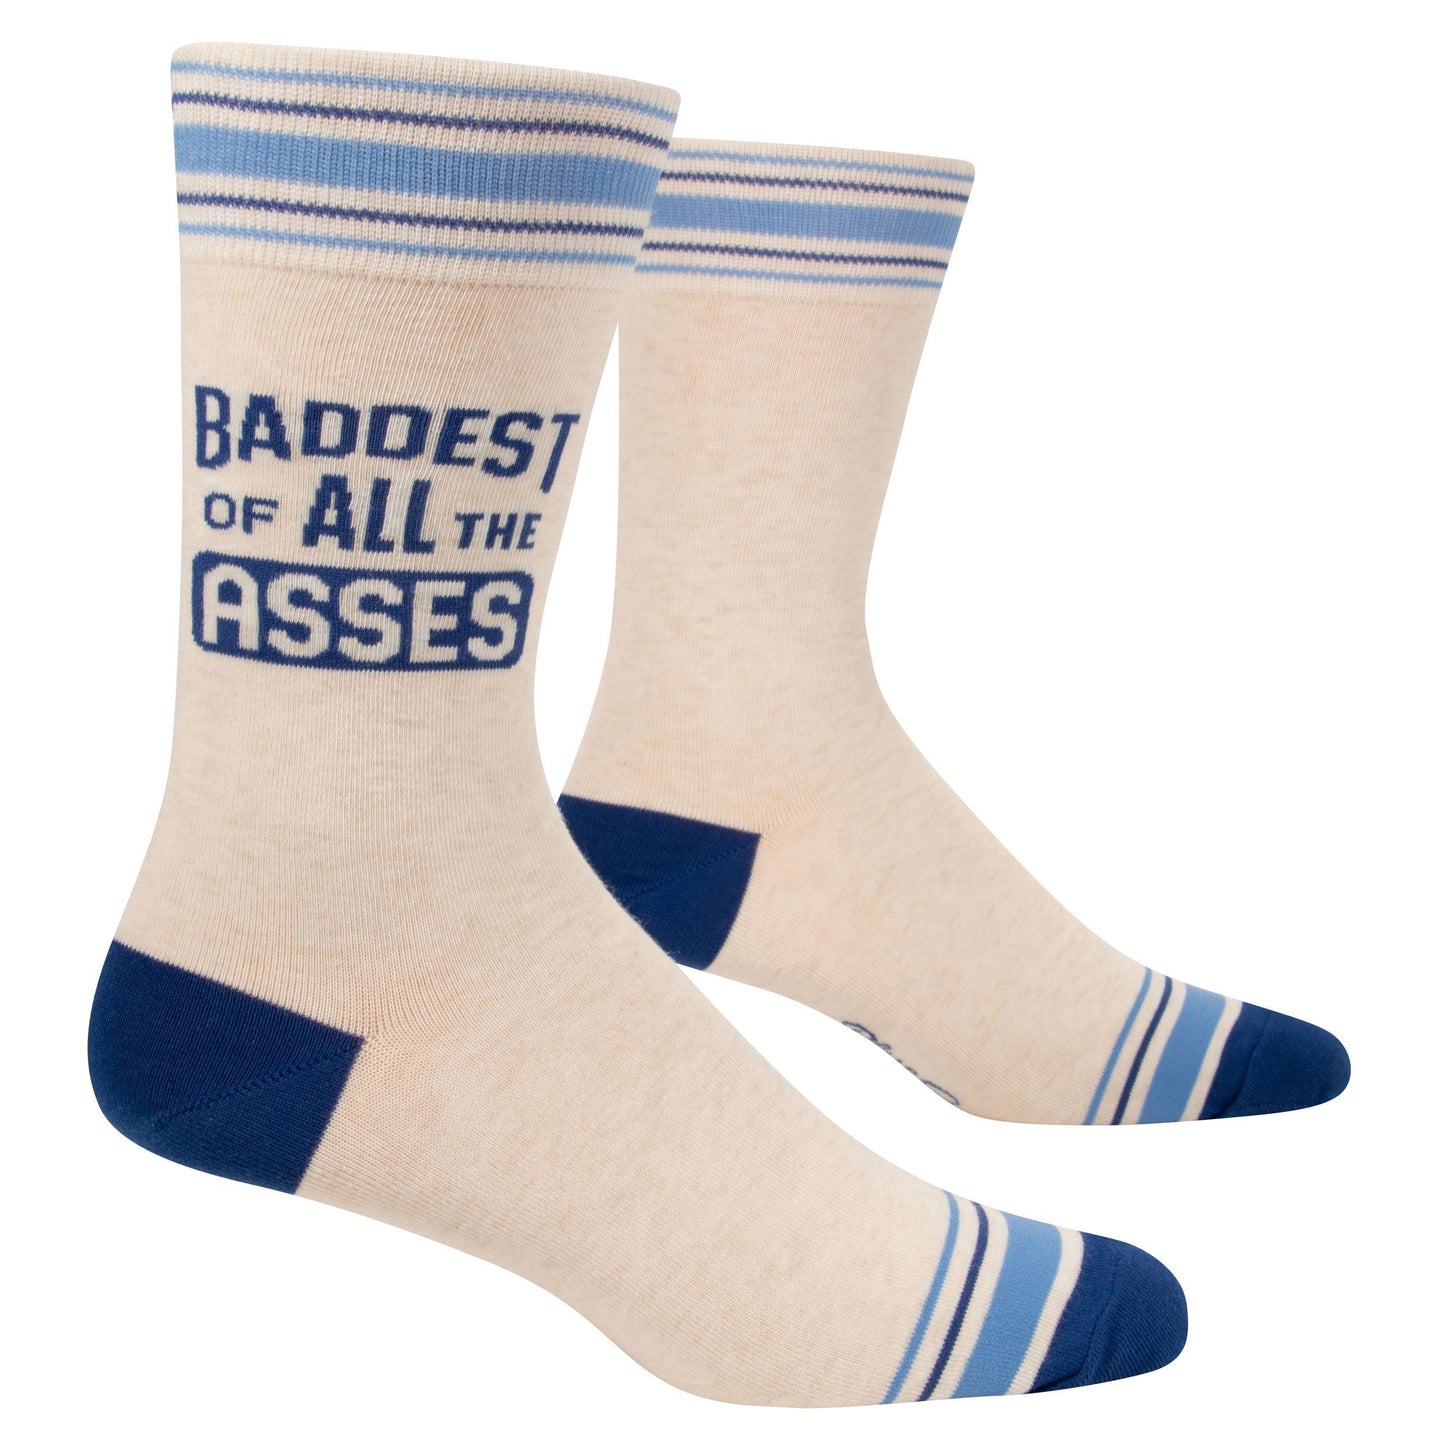 Baddest Of All The Asses Men's Crew Socks in Blue